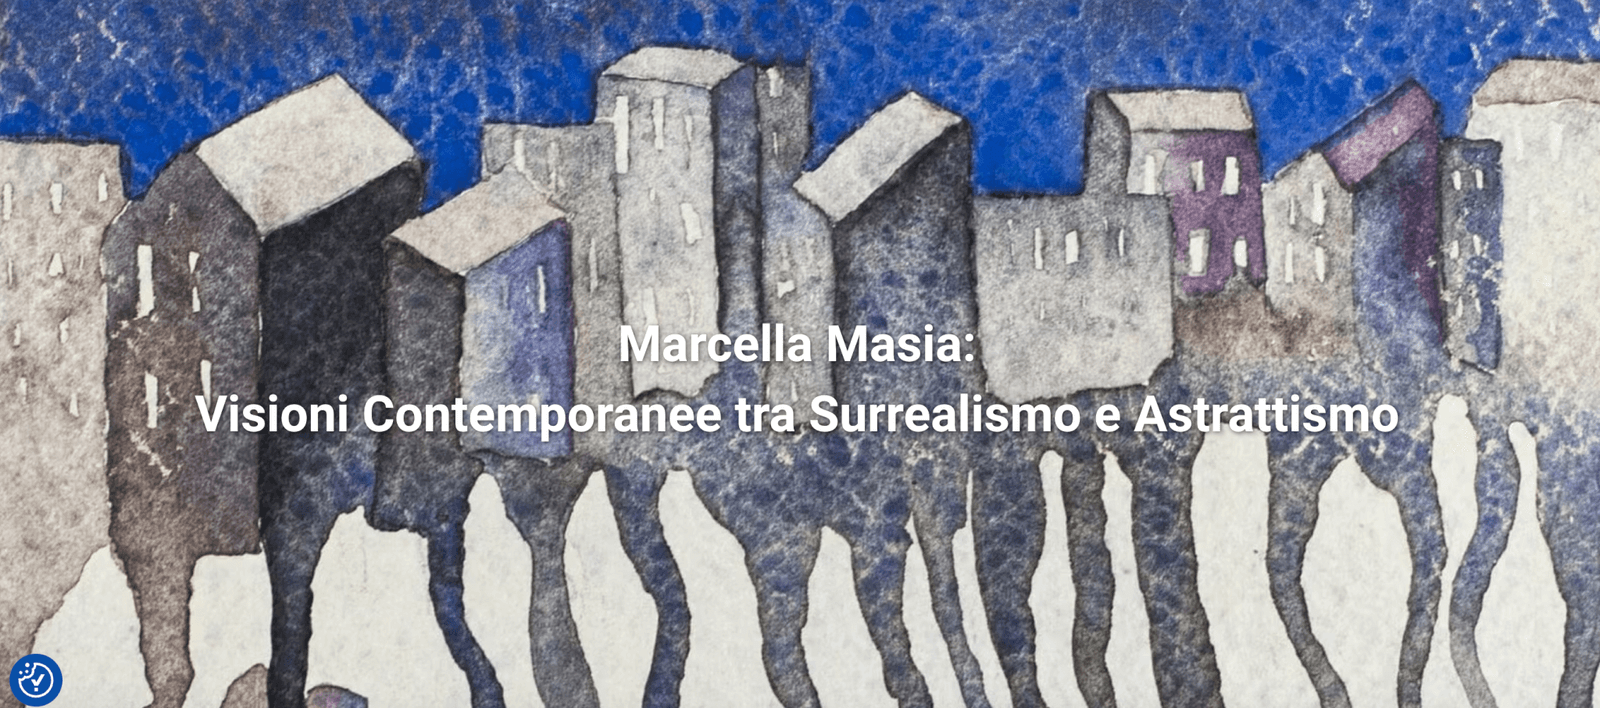 Marcella Masia artista surrealista contemporanea